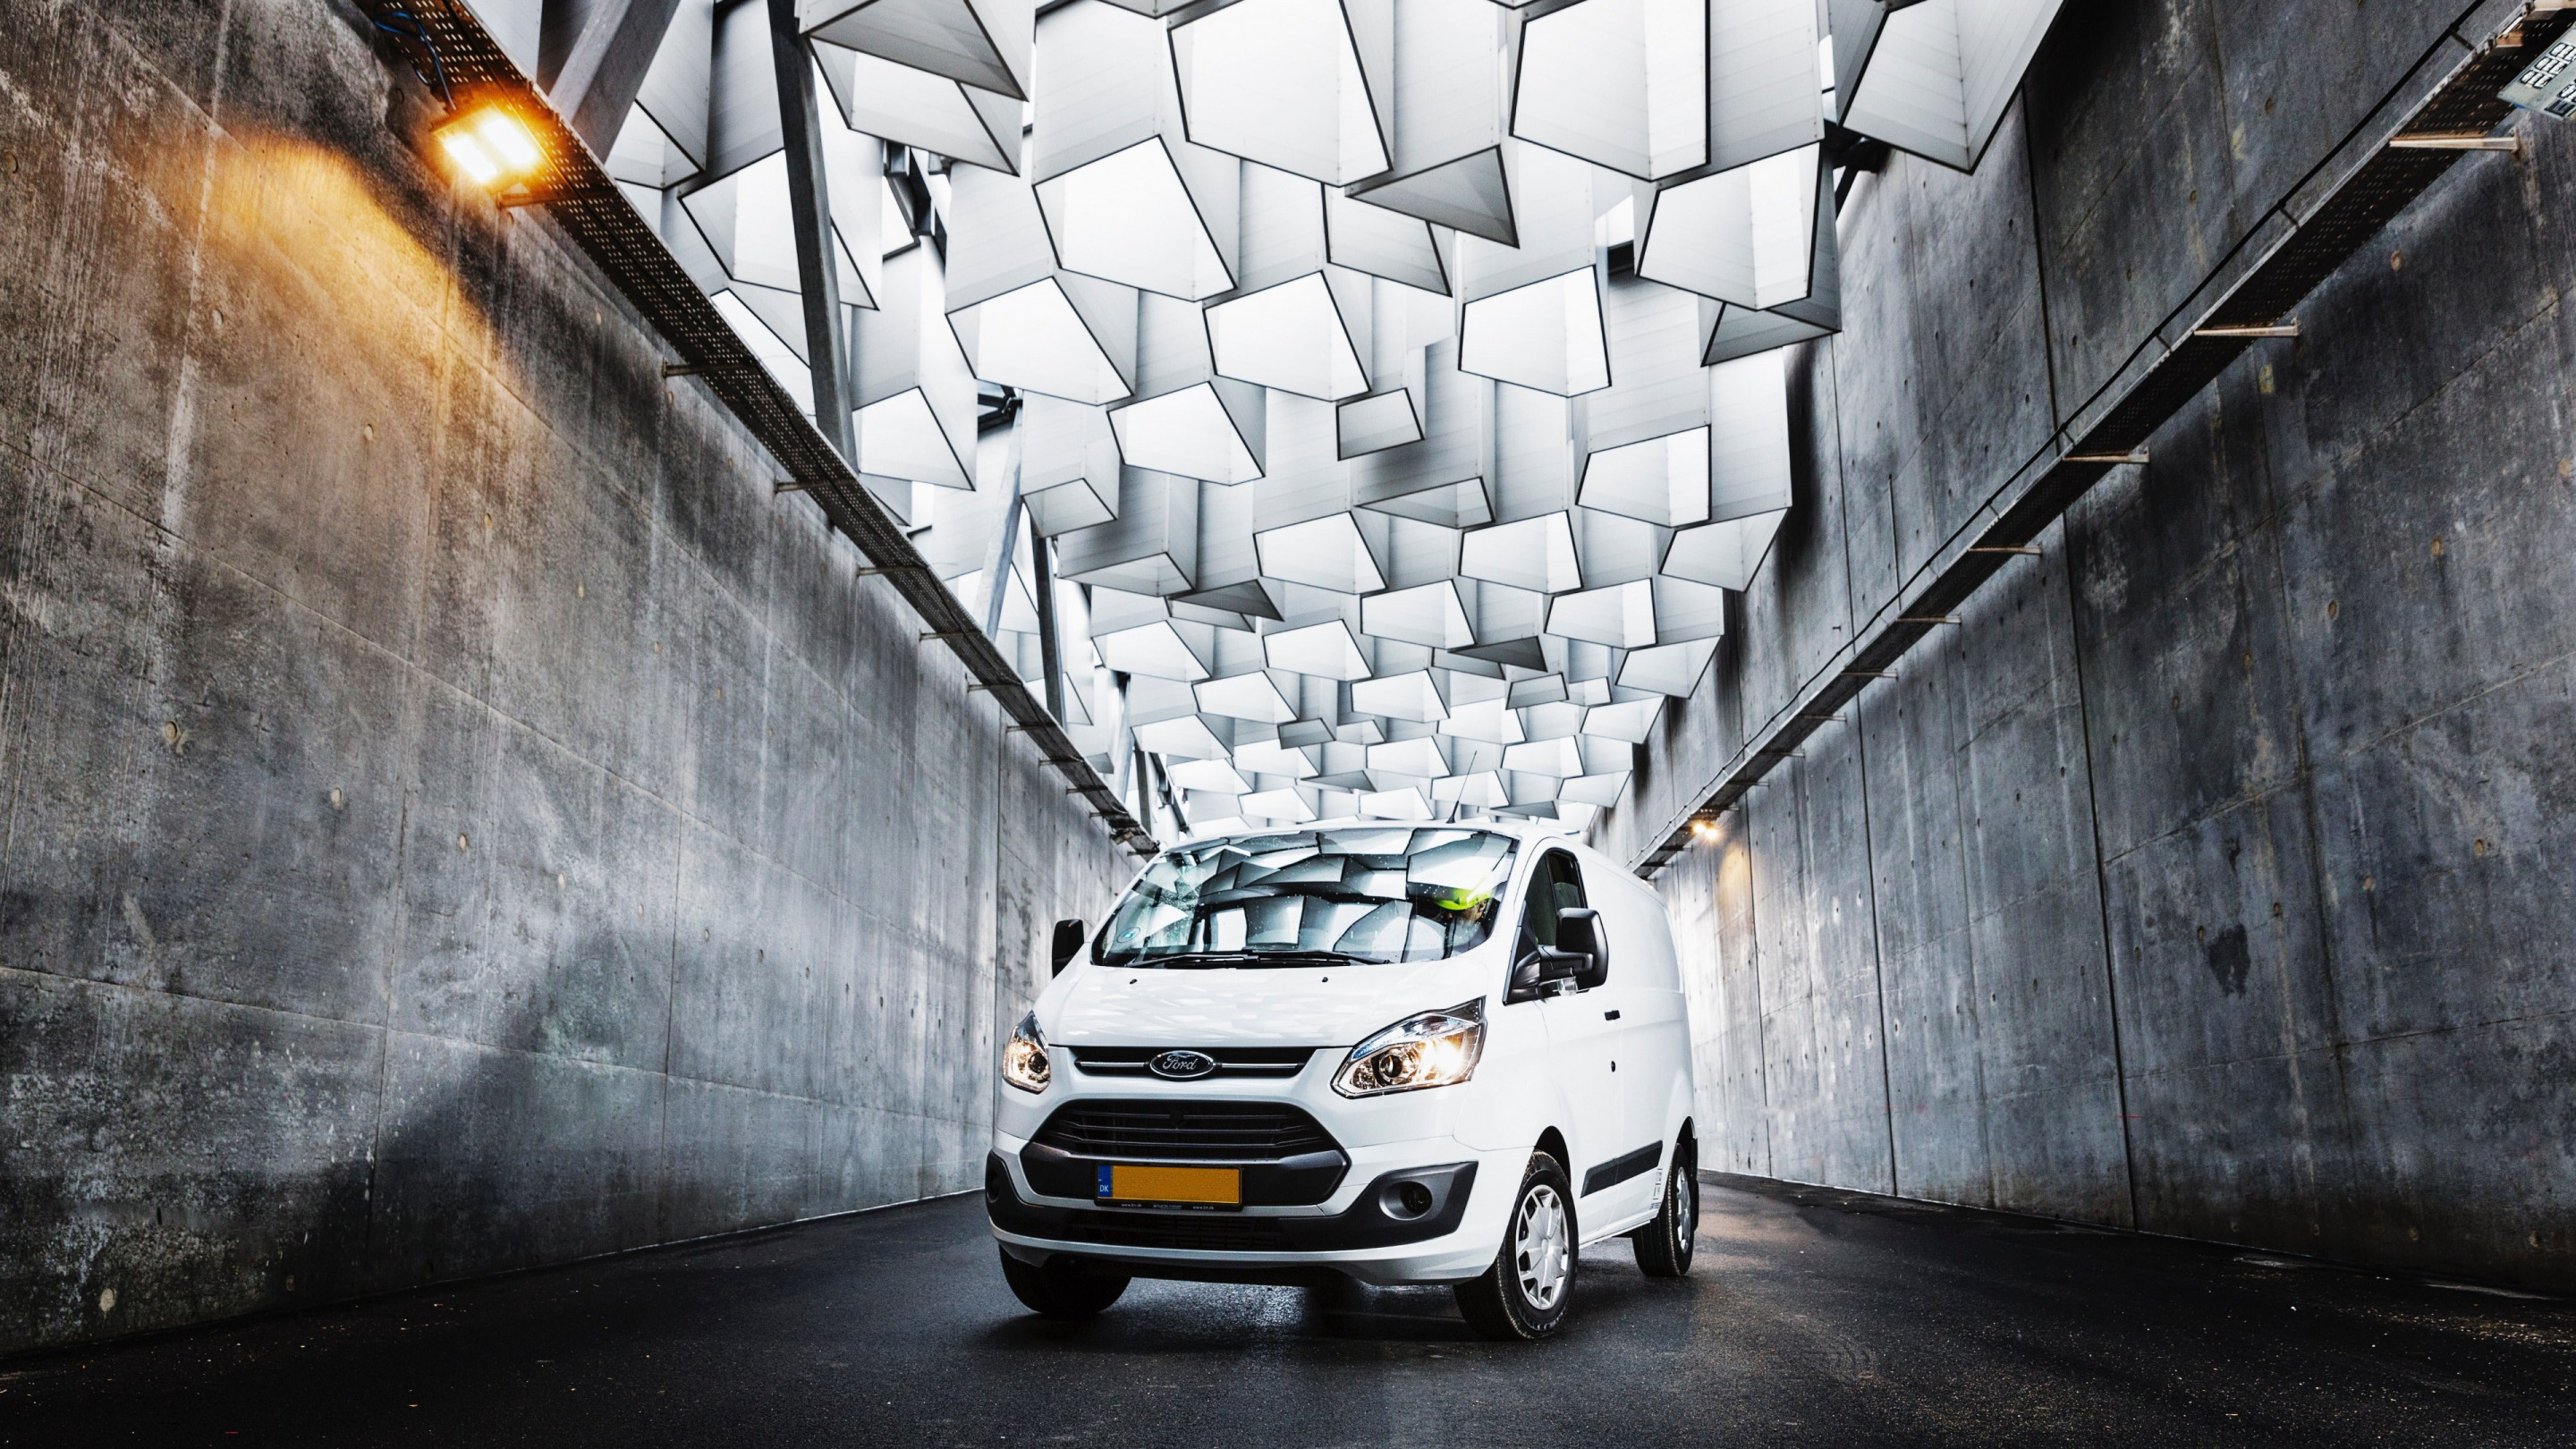 Ford van on the streets of Copenhagen wallpaper 2880x1620